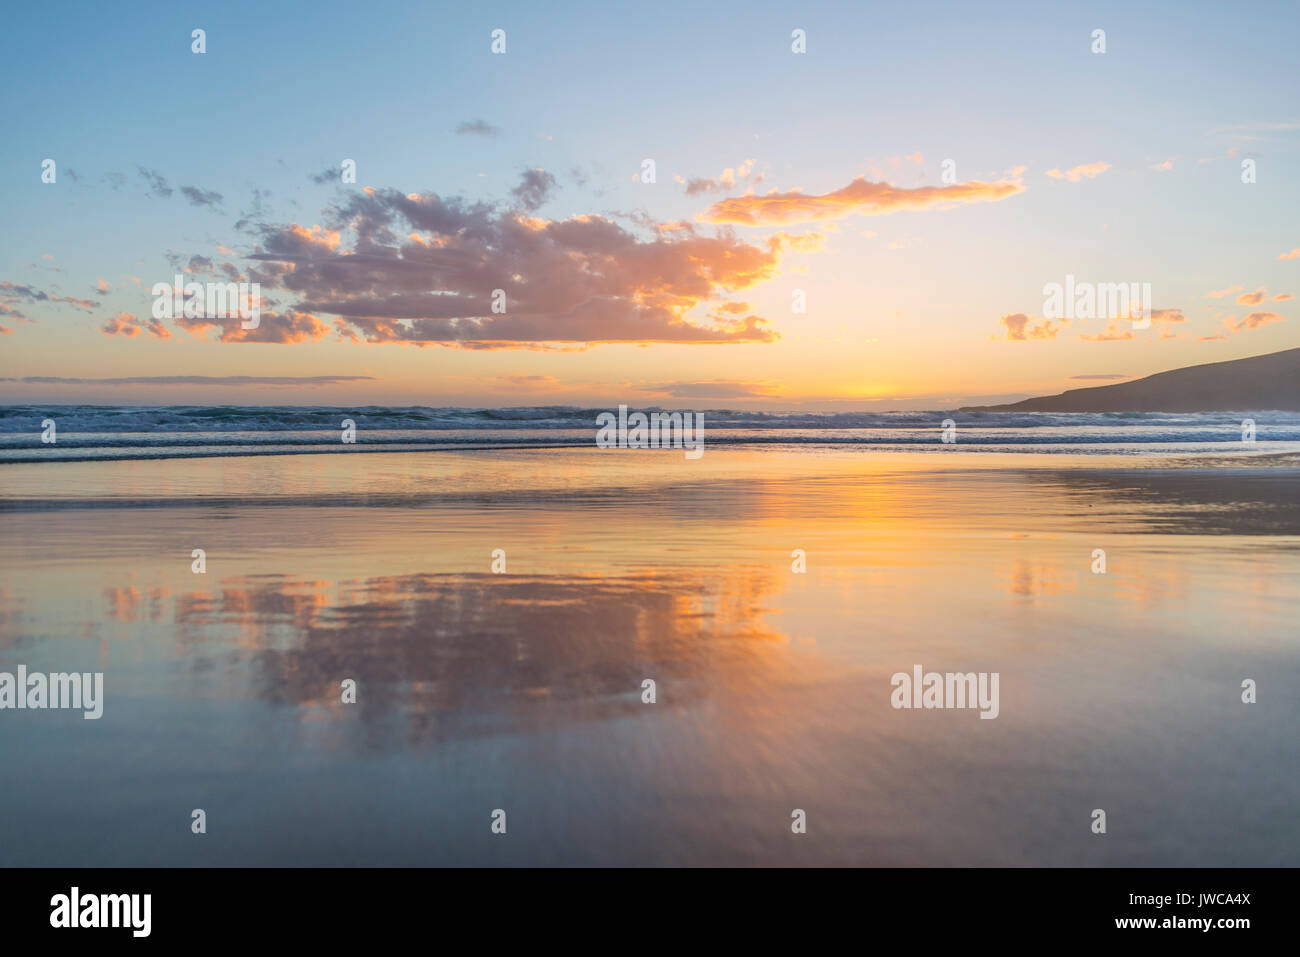 La reflexión, la puesta de sol sobre el mar, el flebótomo, Dunedin, bahía de Otago, Isla del Sur, Nueva Zelanda Foto de stock